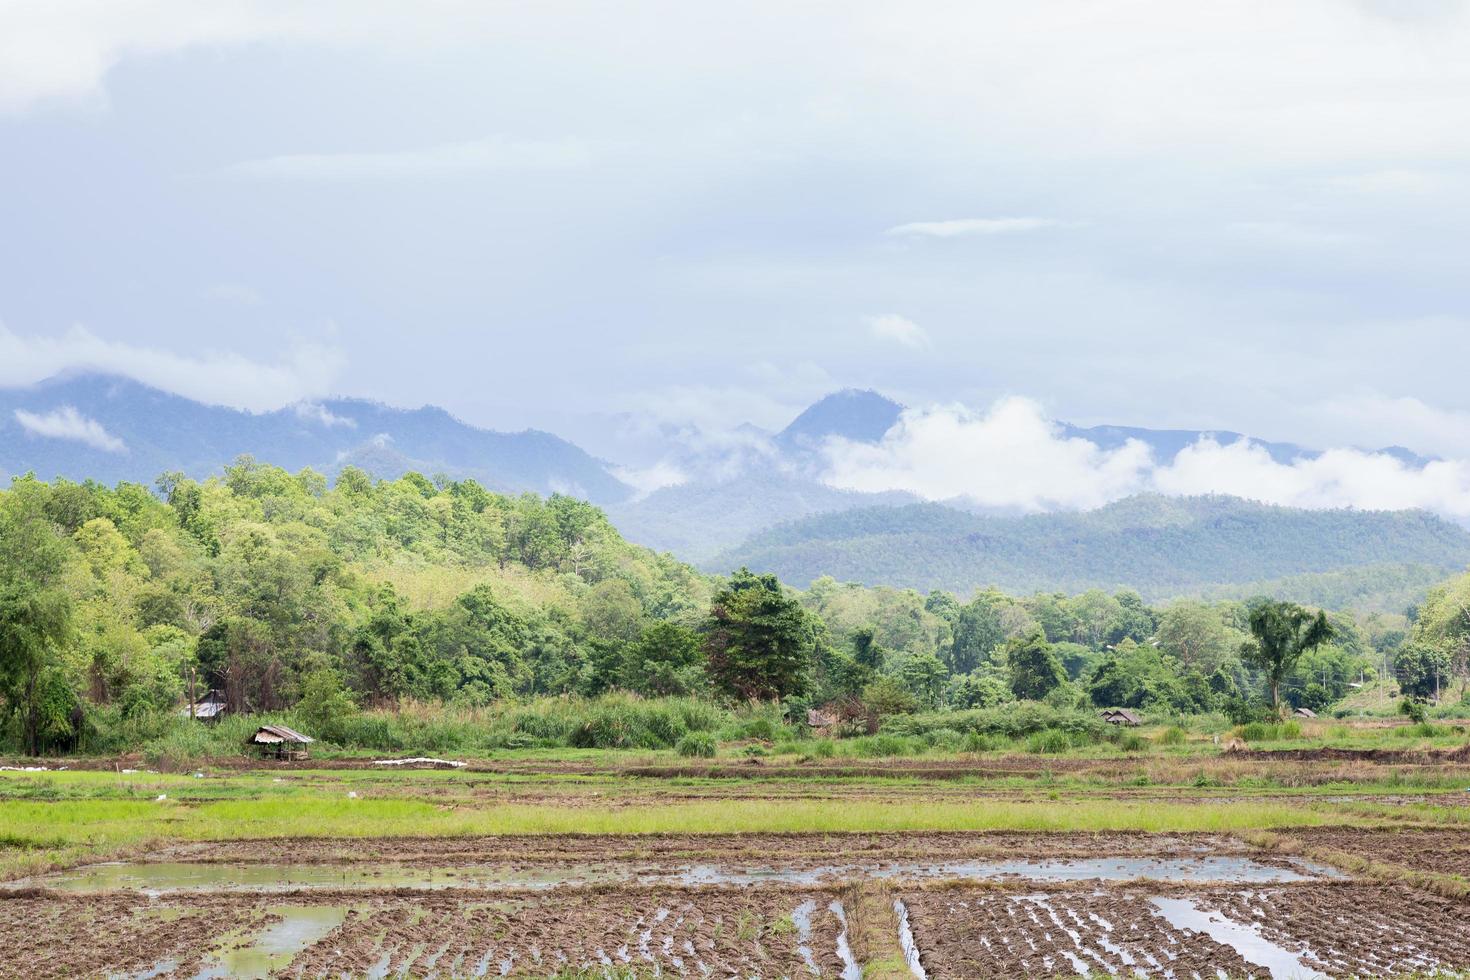 terras aráveis na tailândia foto